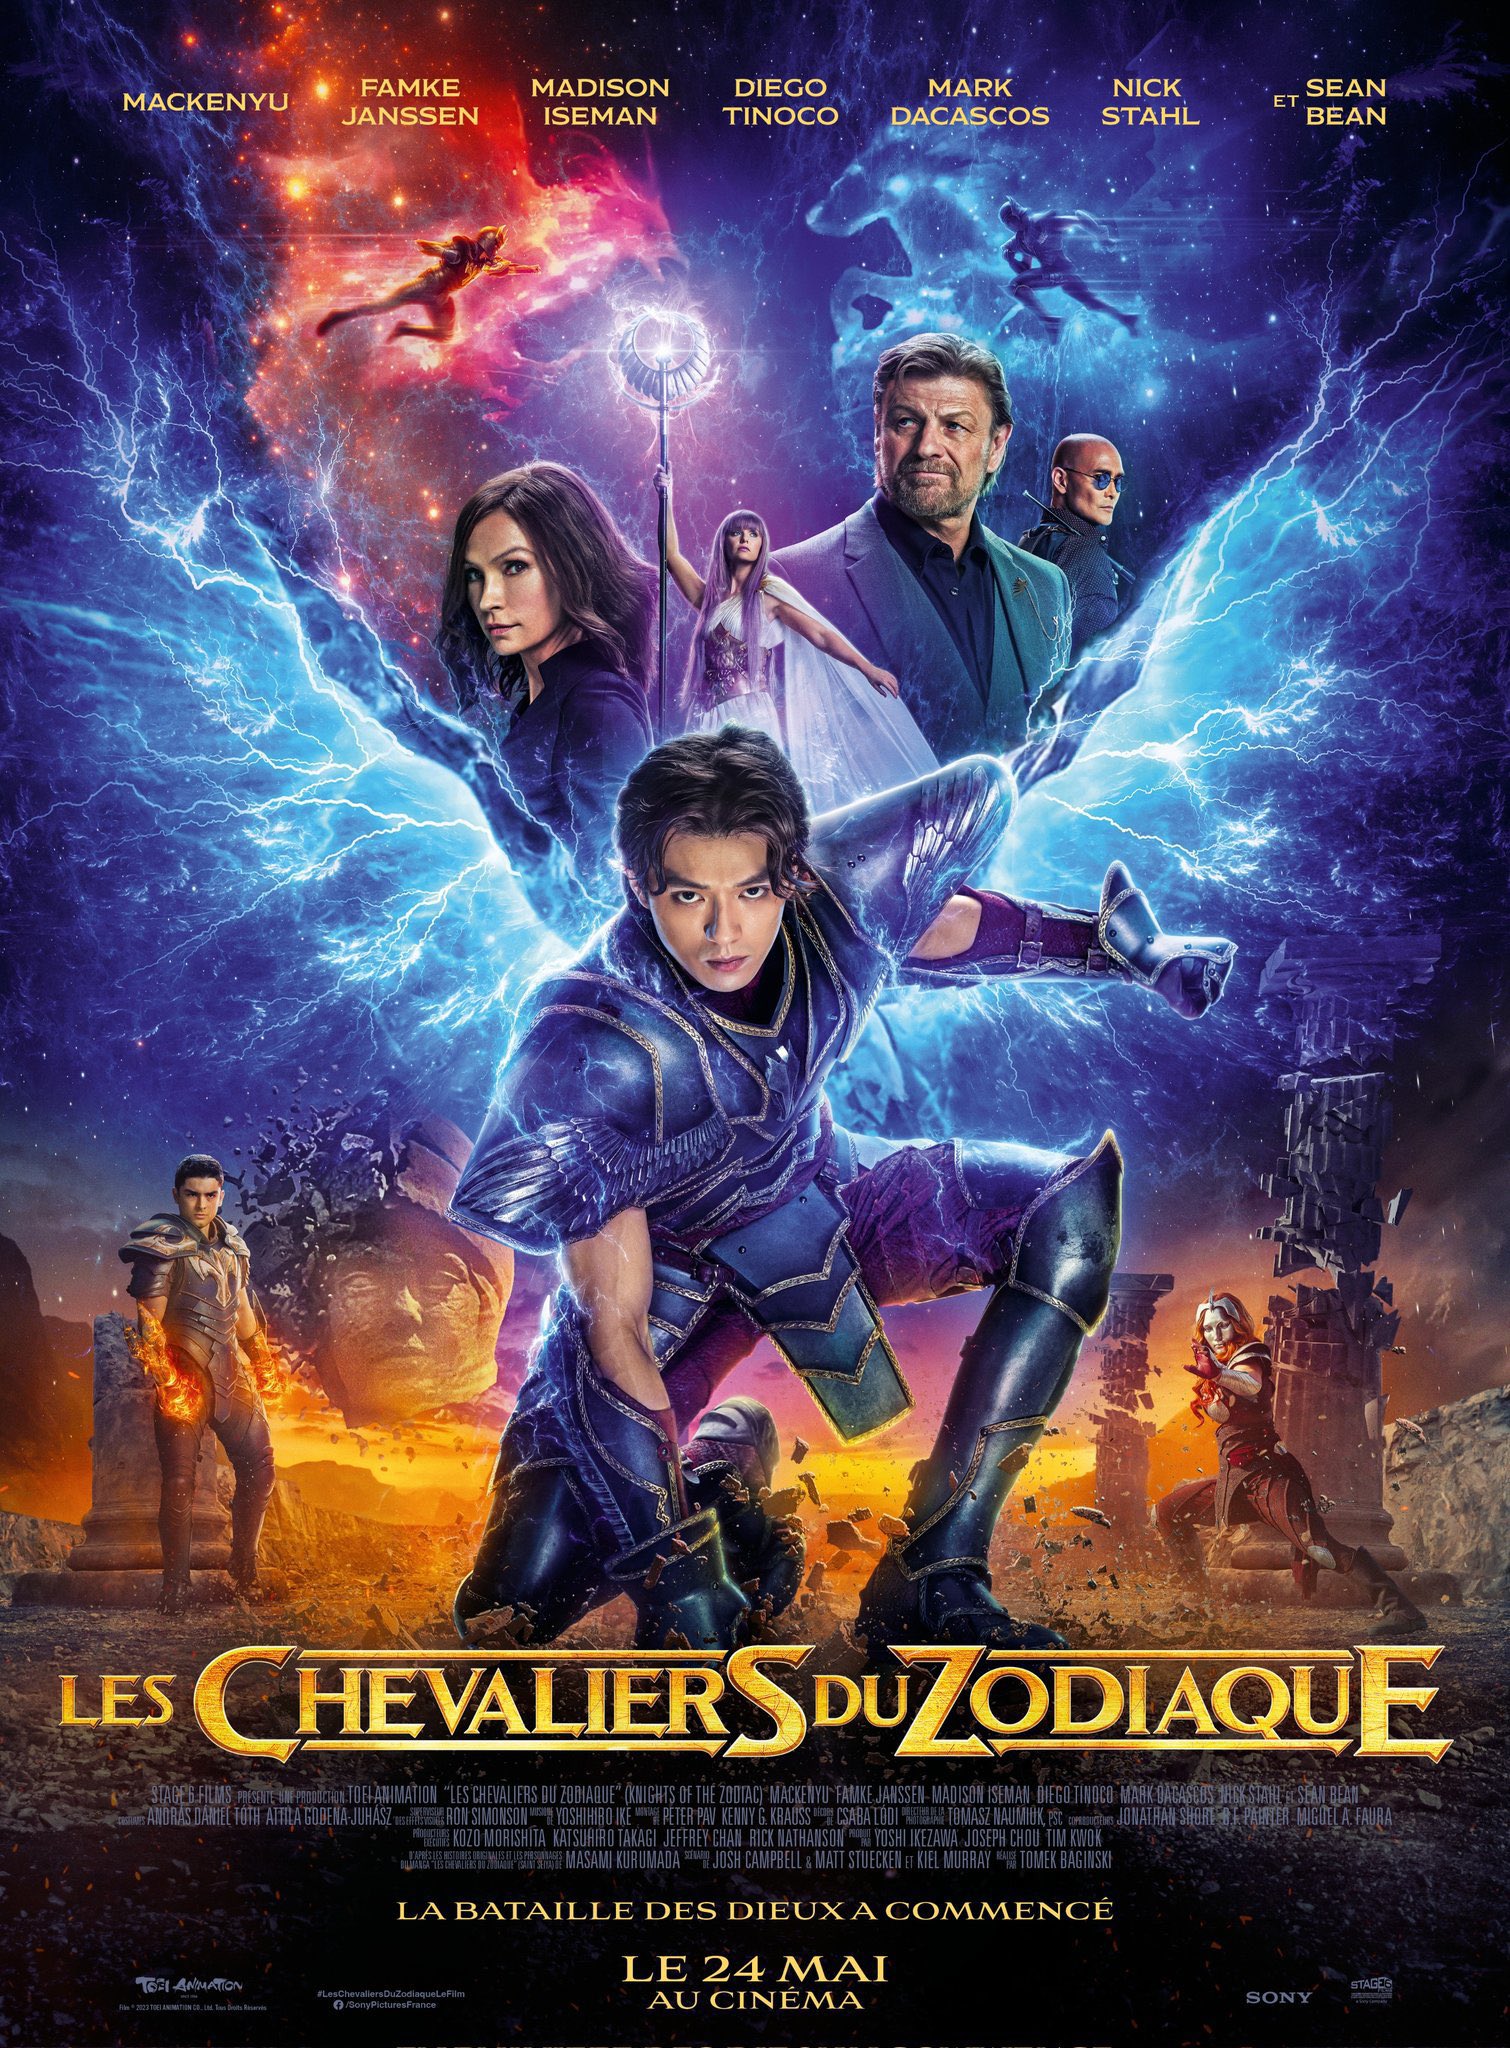 Les Chevaliers du Zodiaque - Le Film - Page 2 98d82512761235a796743eface035e591682177979_main